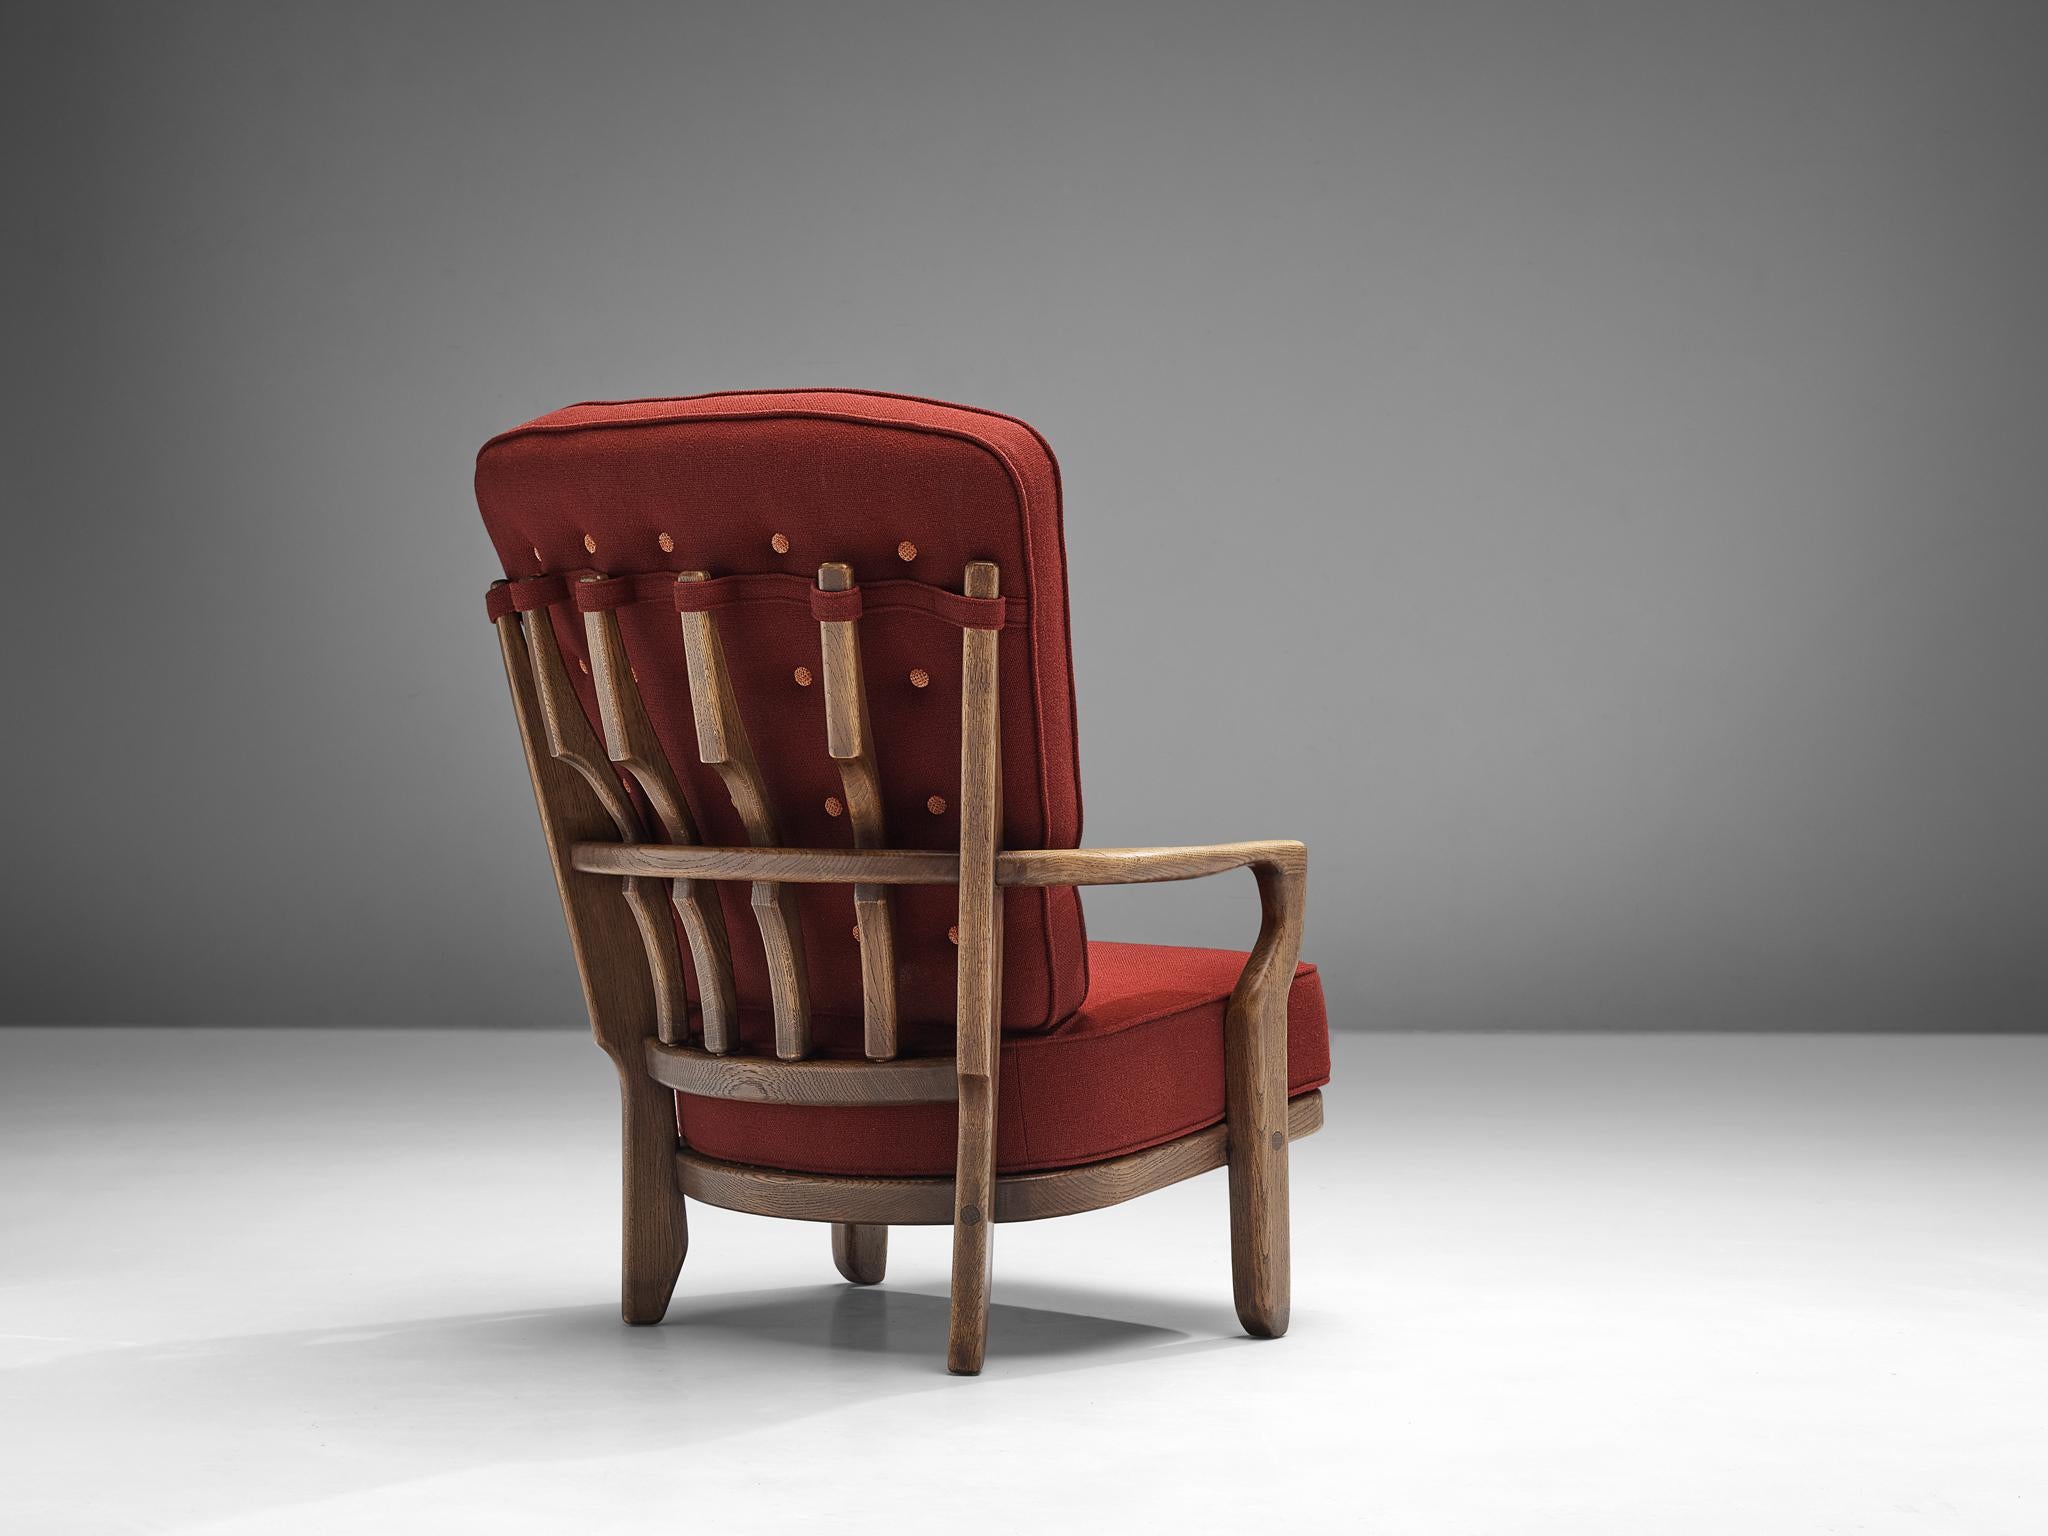 Guillerme et Chambron pour Votre Maison, chaise longue, modèle Mid Repos, chêne, tissu, France, années 1960

Guillerme & Chambron sont connus pour leurs meubles en chêne massif de haute qualité, dont ceux-ci sont un autre exemple. Cette chaise